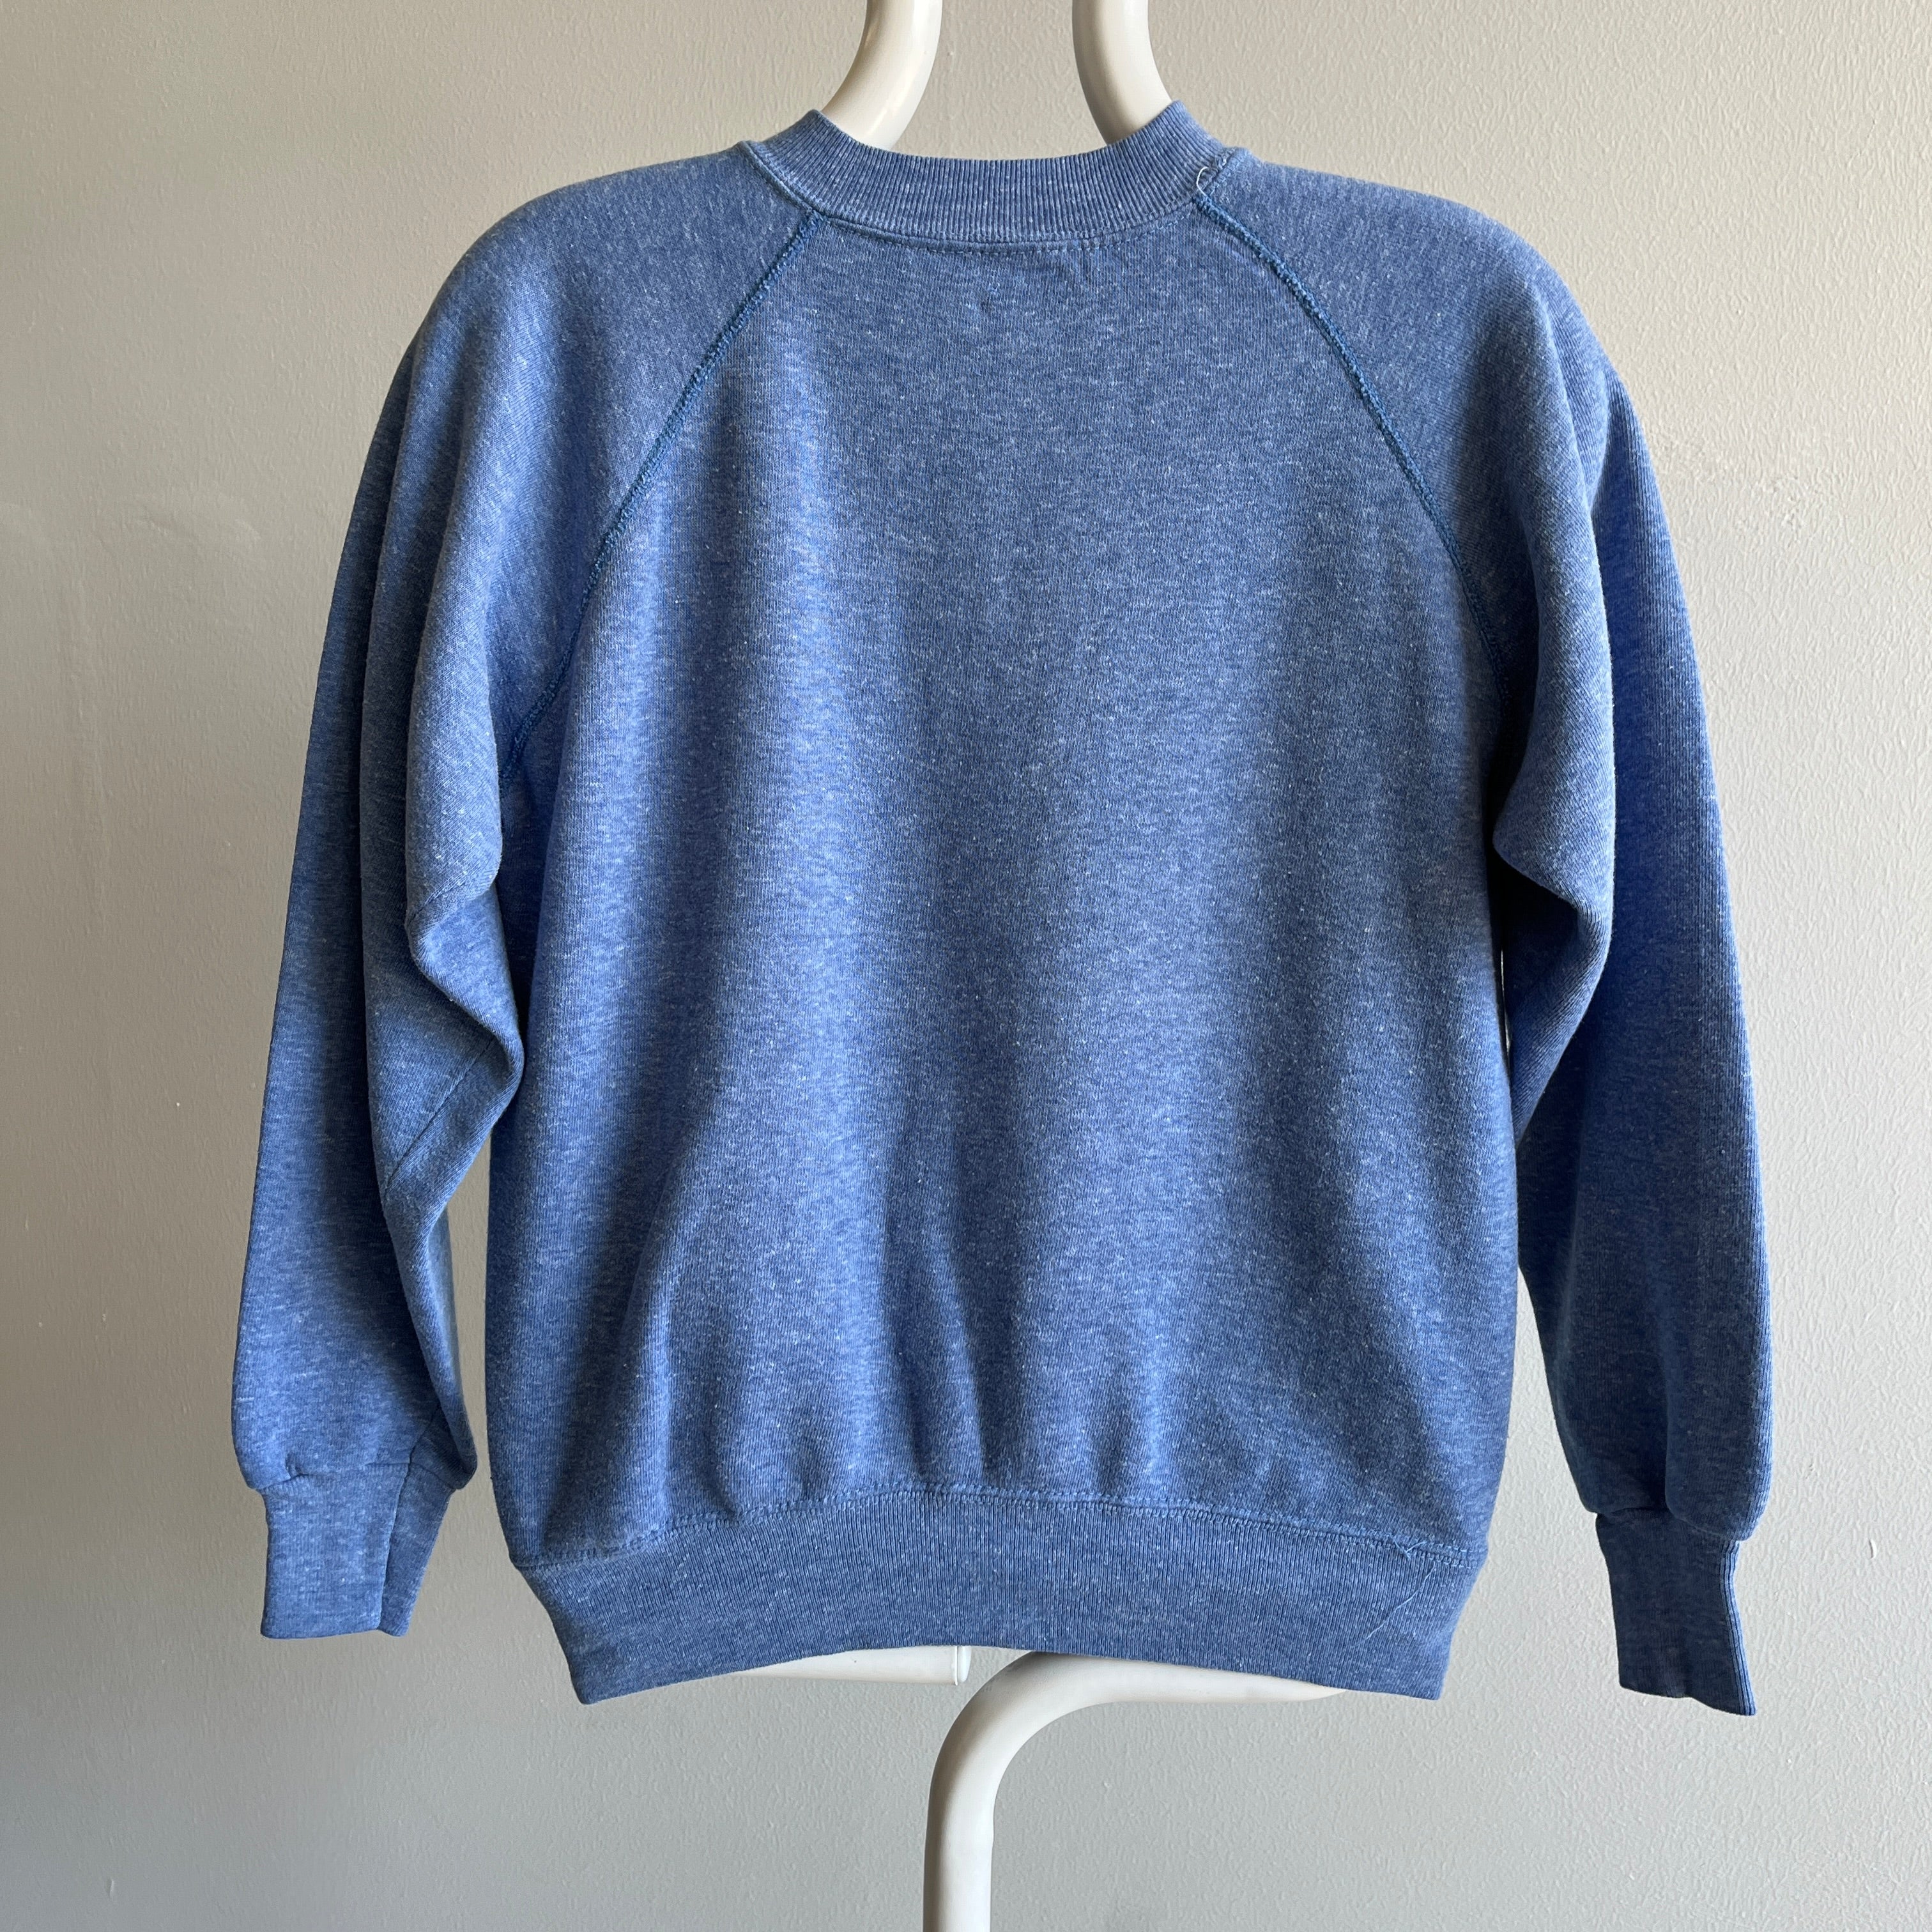 1980s Happiness Is A Norwegian Elkhound Sweatshirt